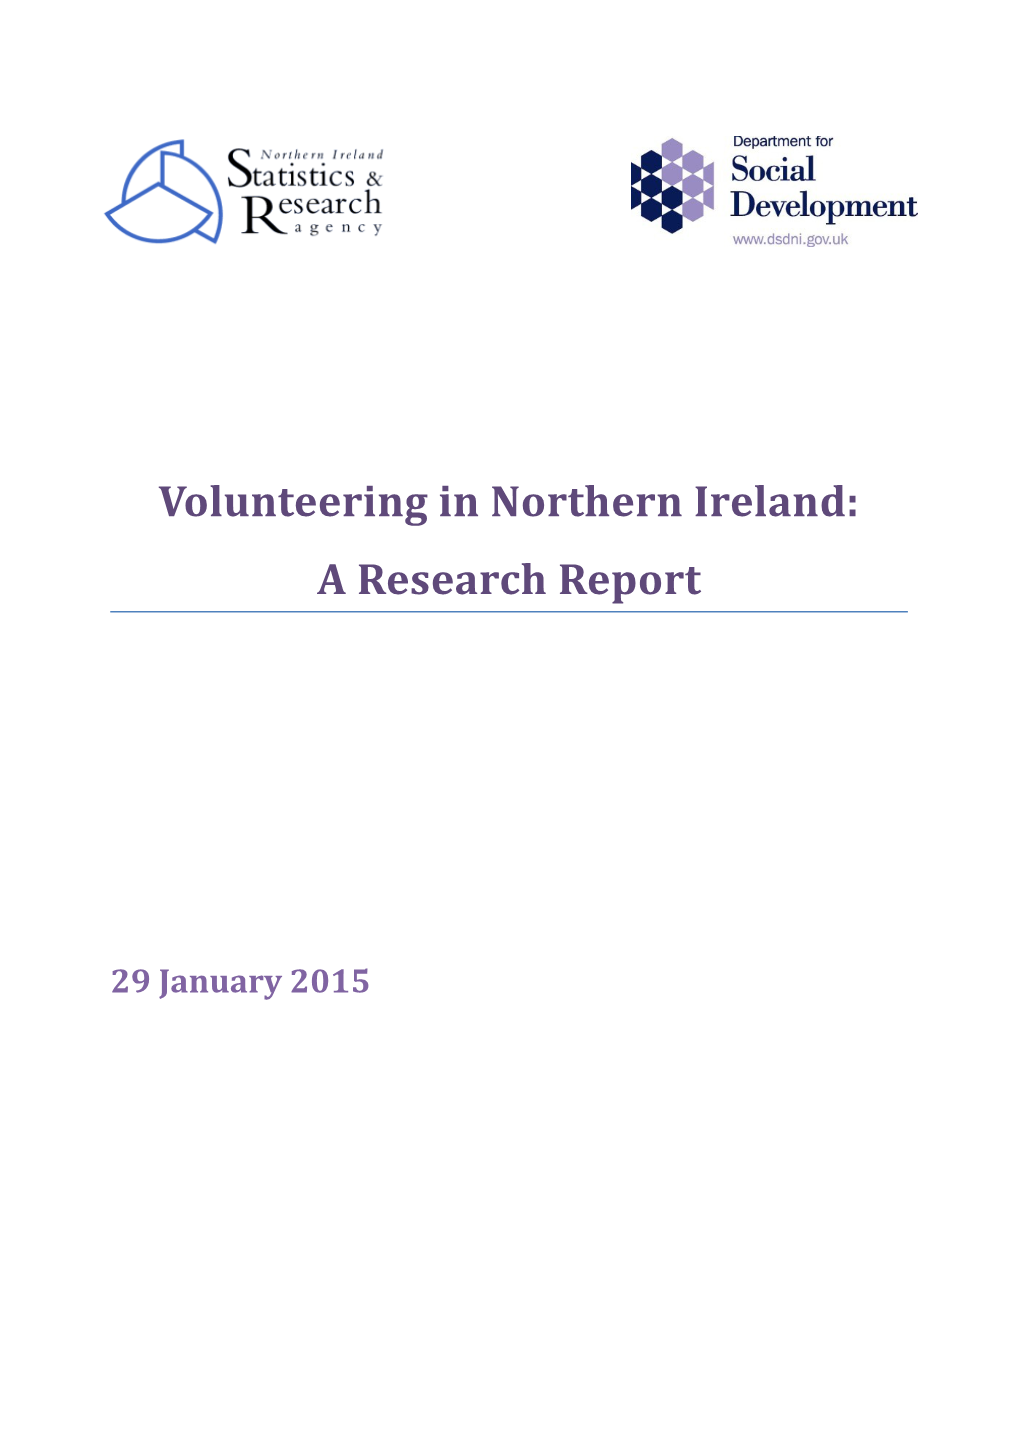 Volunteering in Northern Ireland Research Report 2015